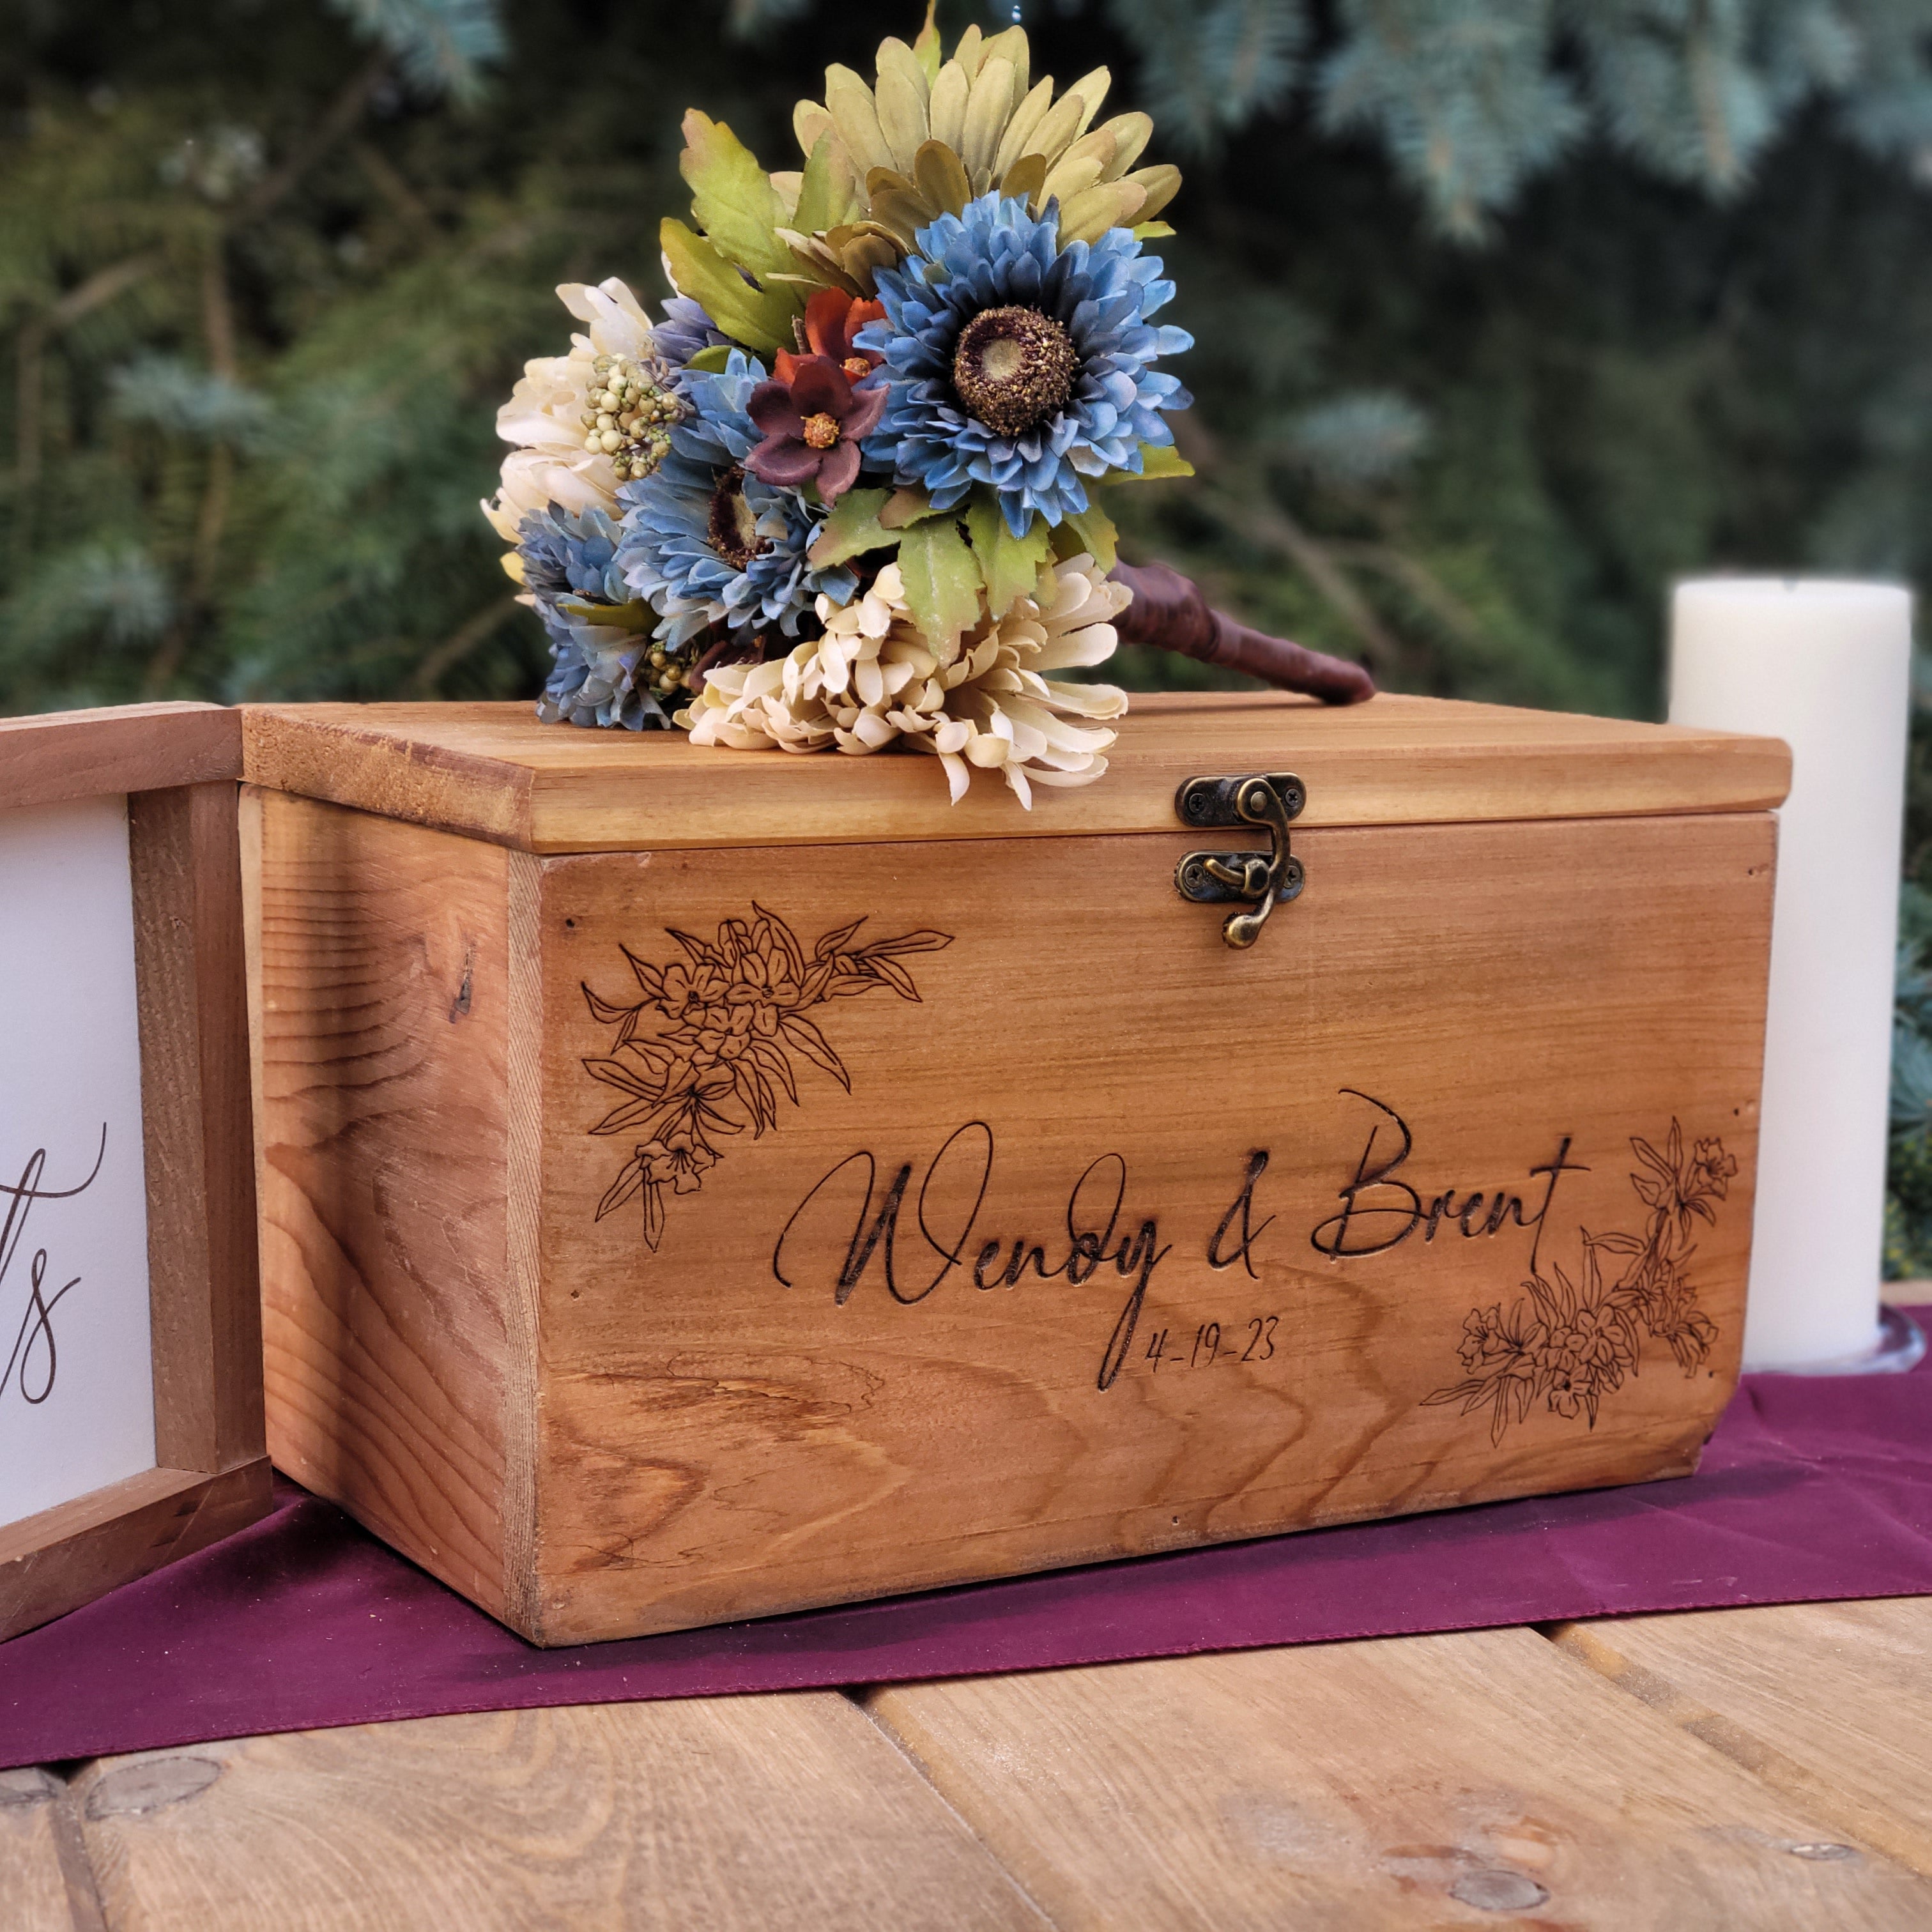 Card Box for Wedding Rustic Wedding Card Box With Slot Wedding 